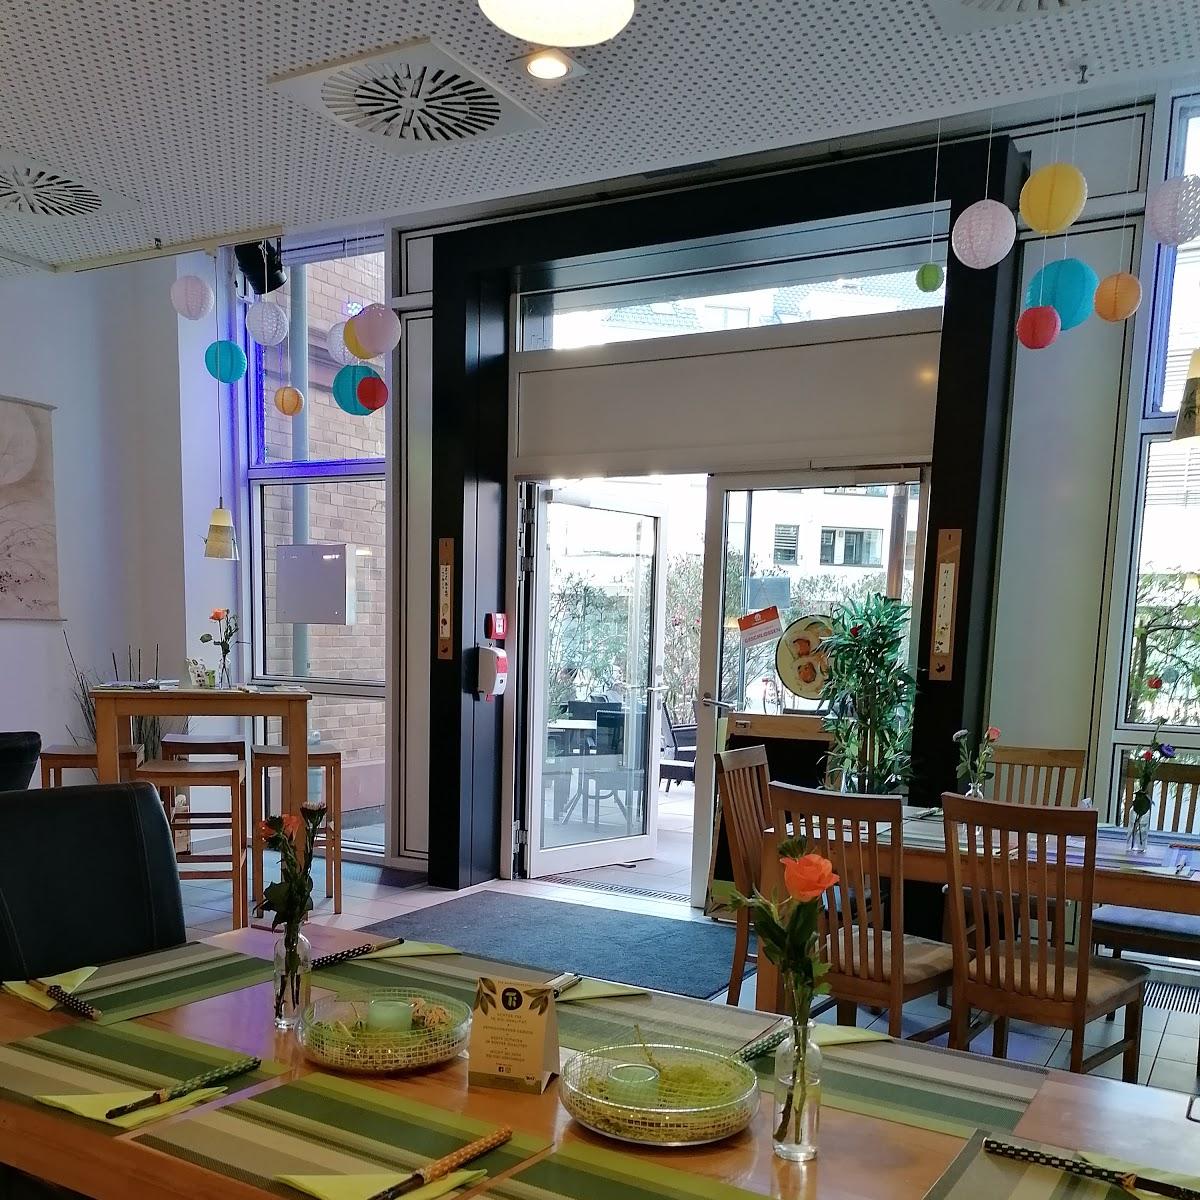 Restaurant "Happy Sumo" in Mainz